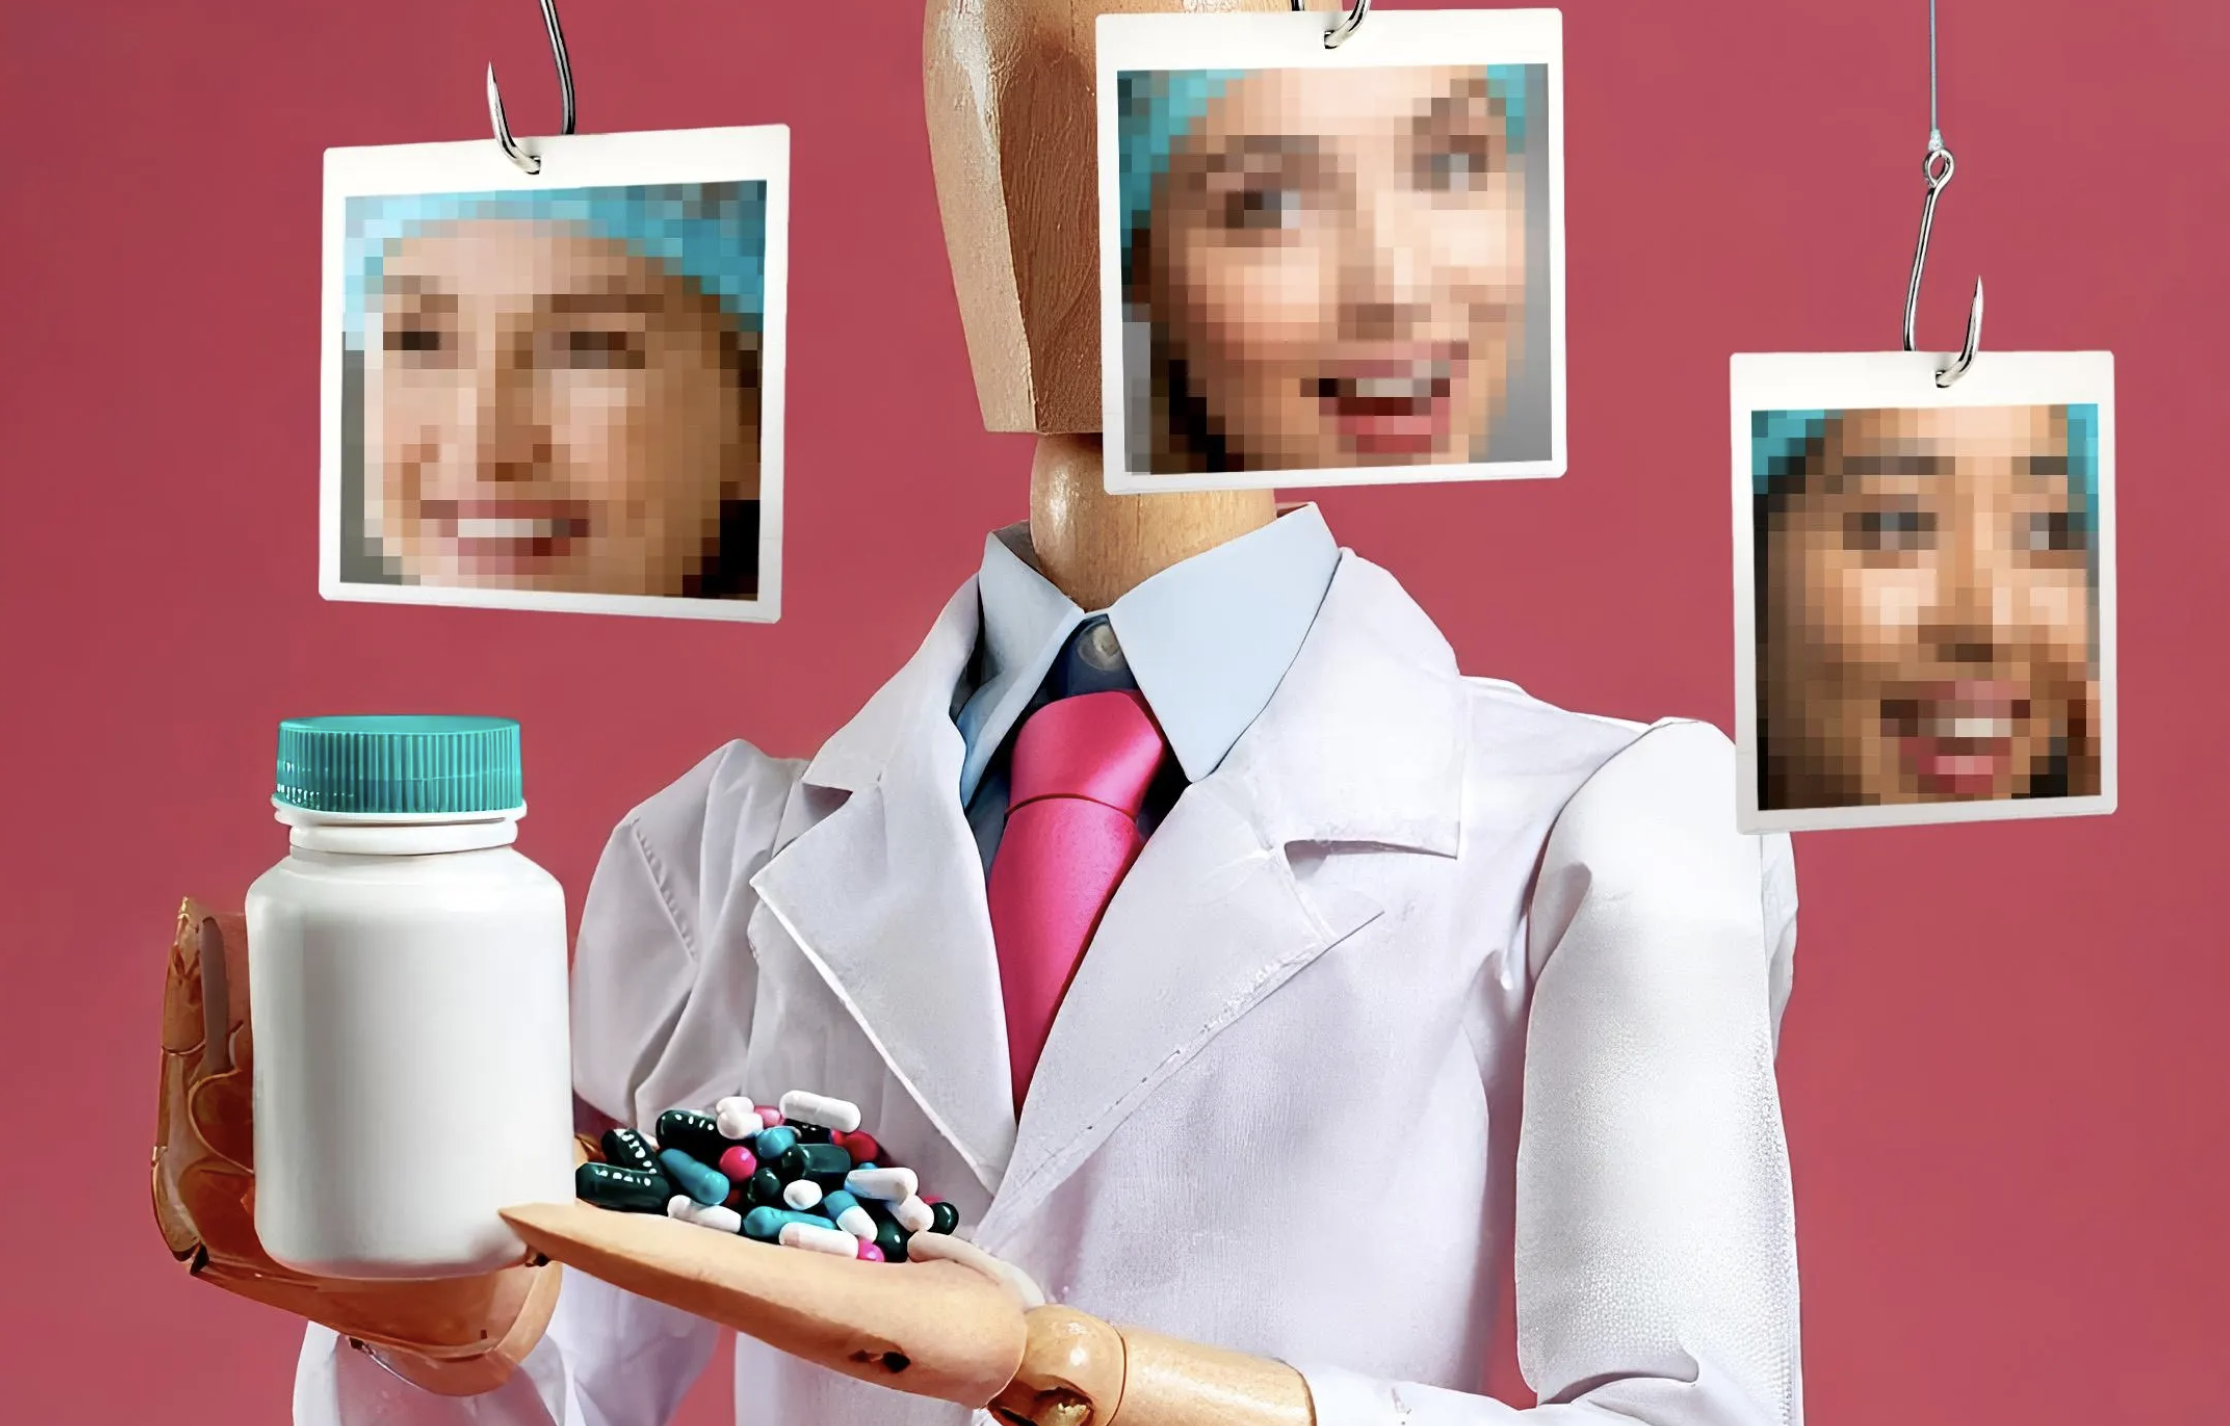 TikTokers están robando fotos de médicos y enfermeras para vender pastillas y otros fármacos